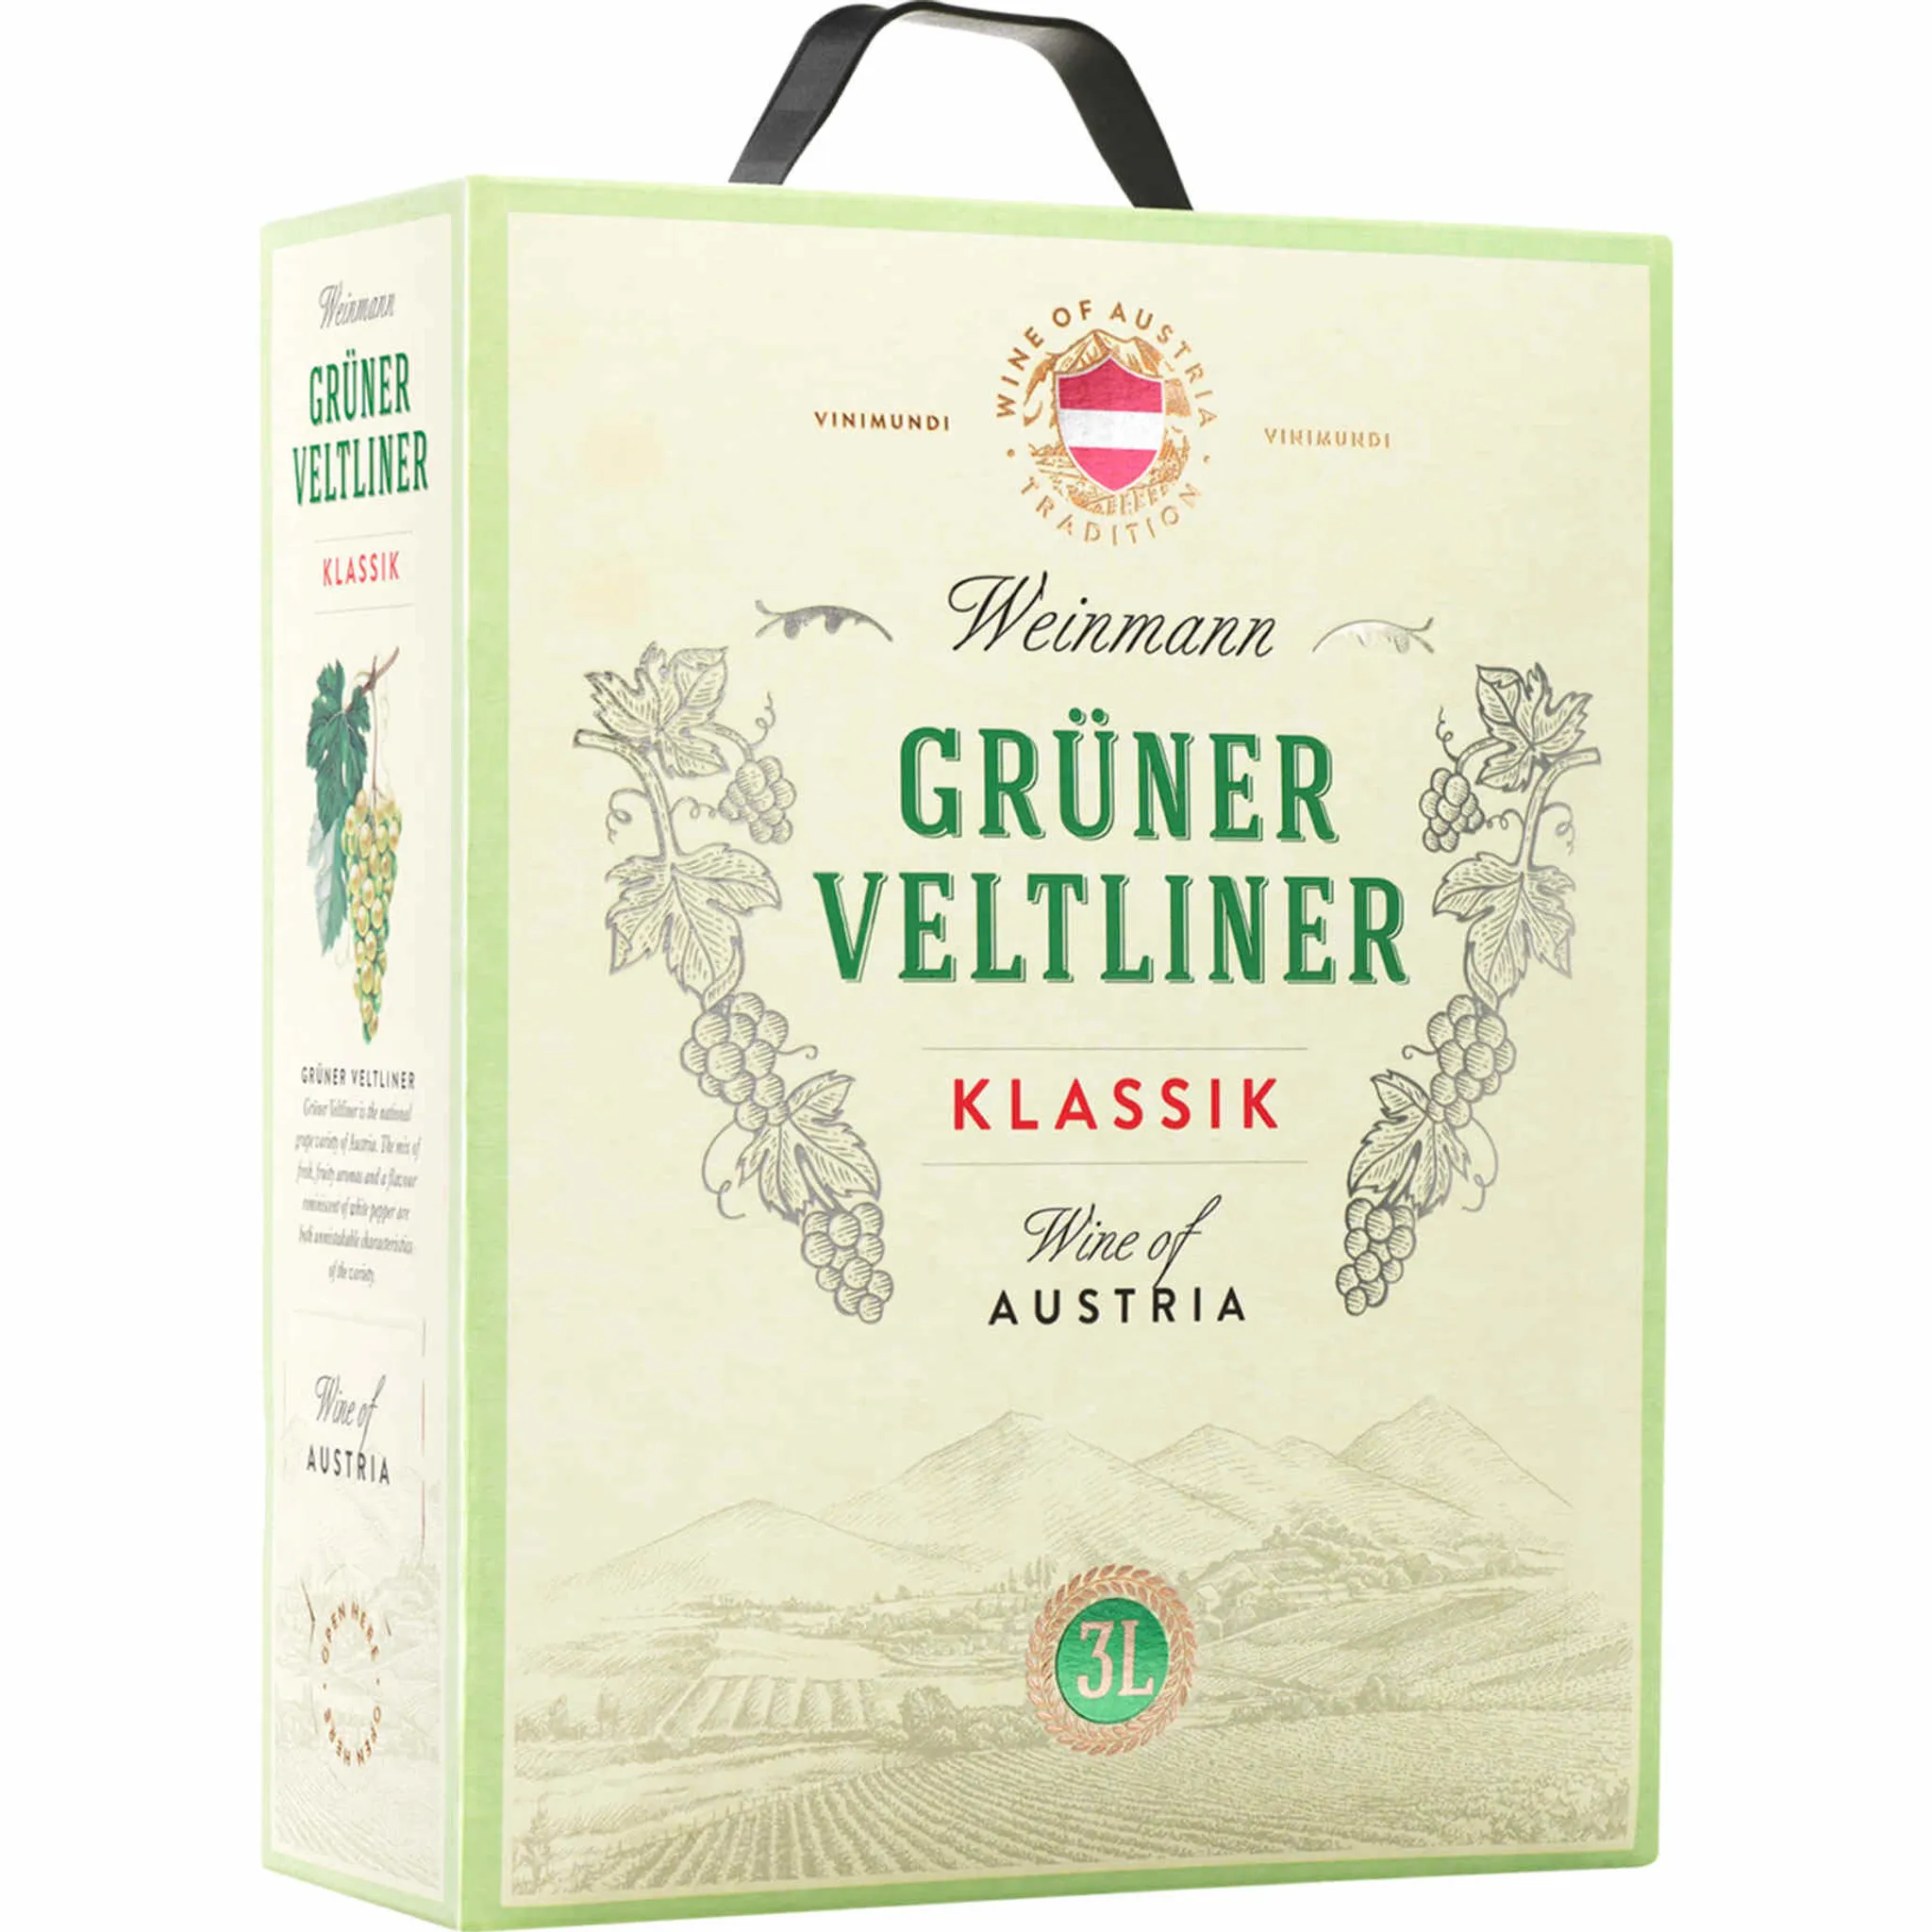 Weinmann Grüner Velentiner 3,0l Box in Bag